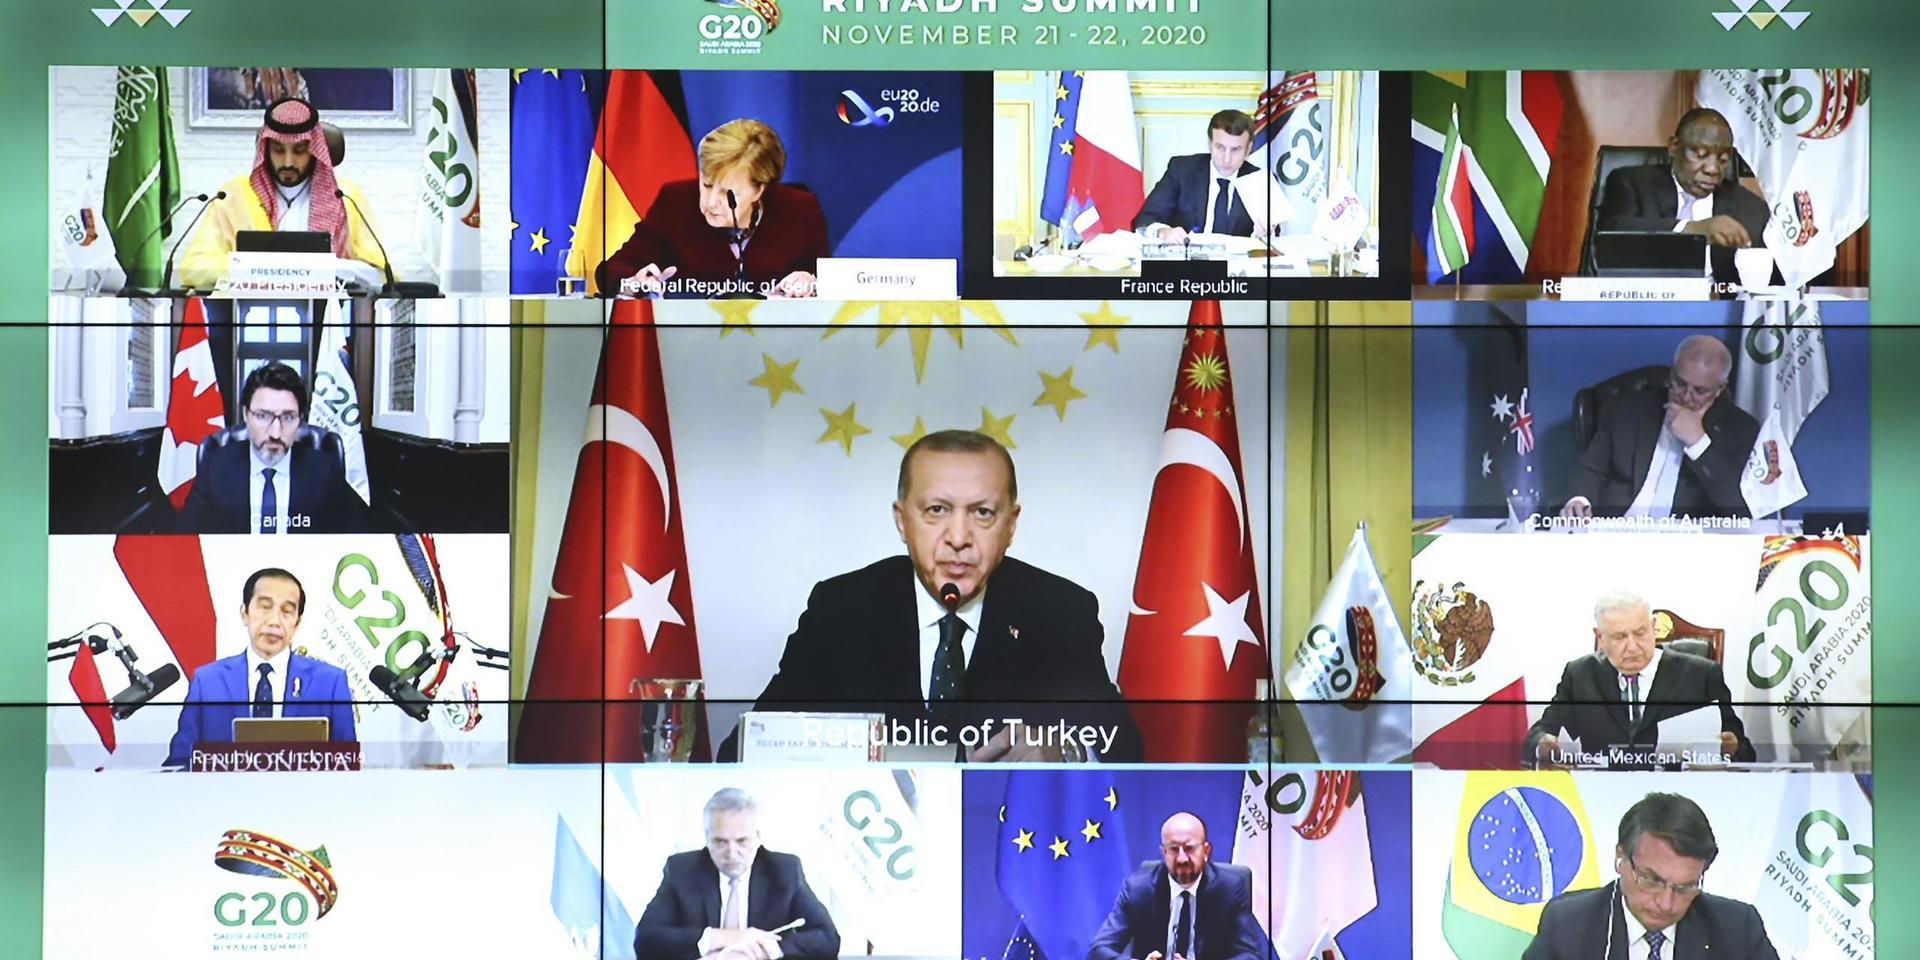 När Recep Tayyip Erdogan fick ordet under helgens G20-möte sade han också att Turkiet ser sig som en del av Europa. Han vände sig till EU och krävde att unionen skulle 'hålla sina löften' om medlemskapsförhandlingar och flyktingar. I bildens nederkant syns EU:s permanente rådsordförande Charles Michel sitta och lyssna.